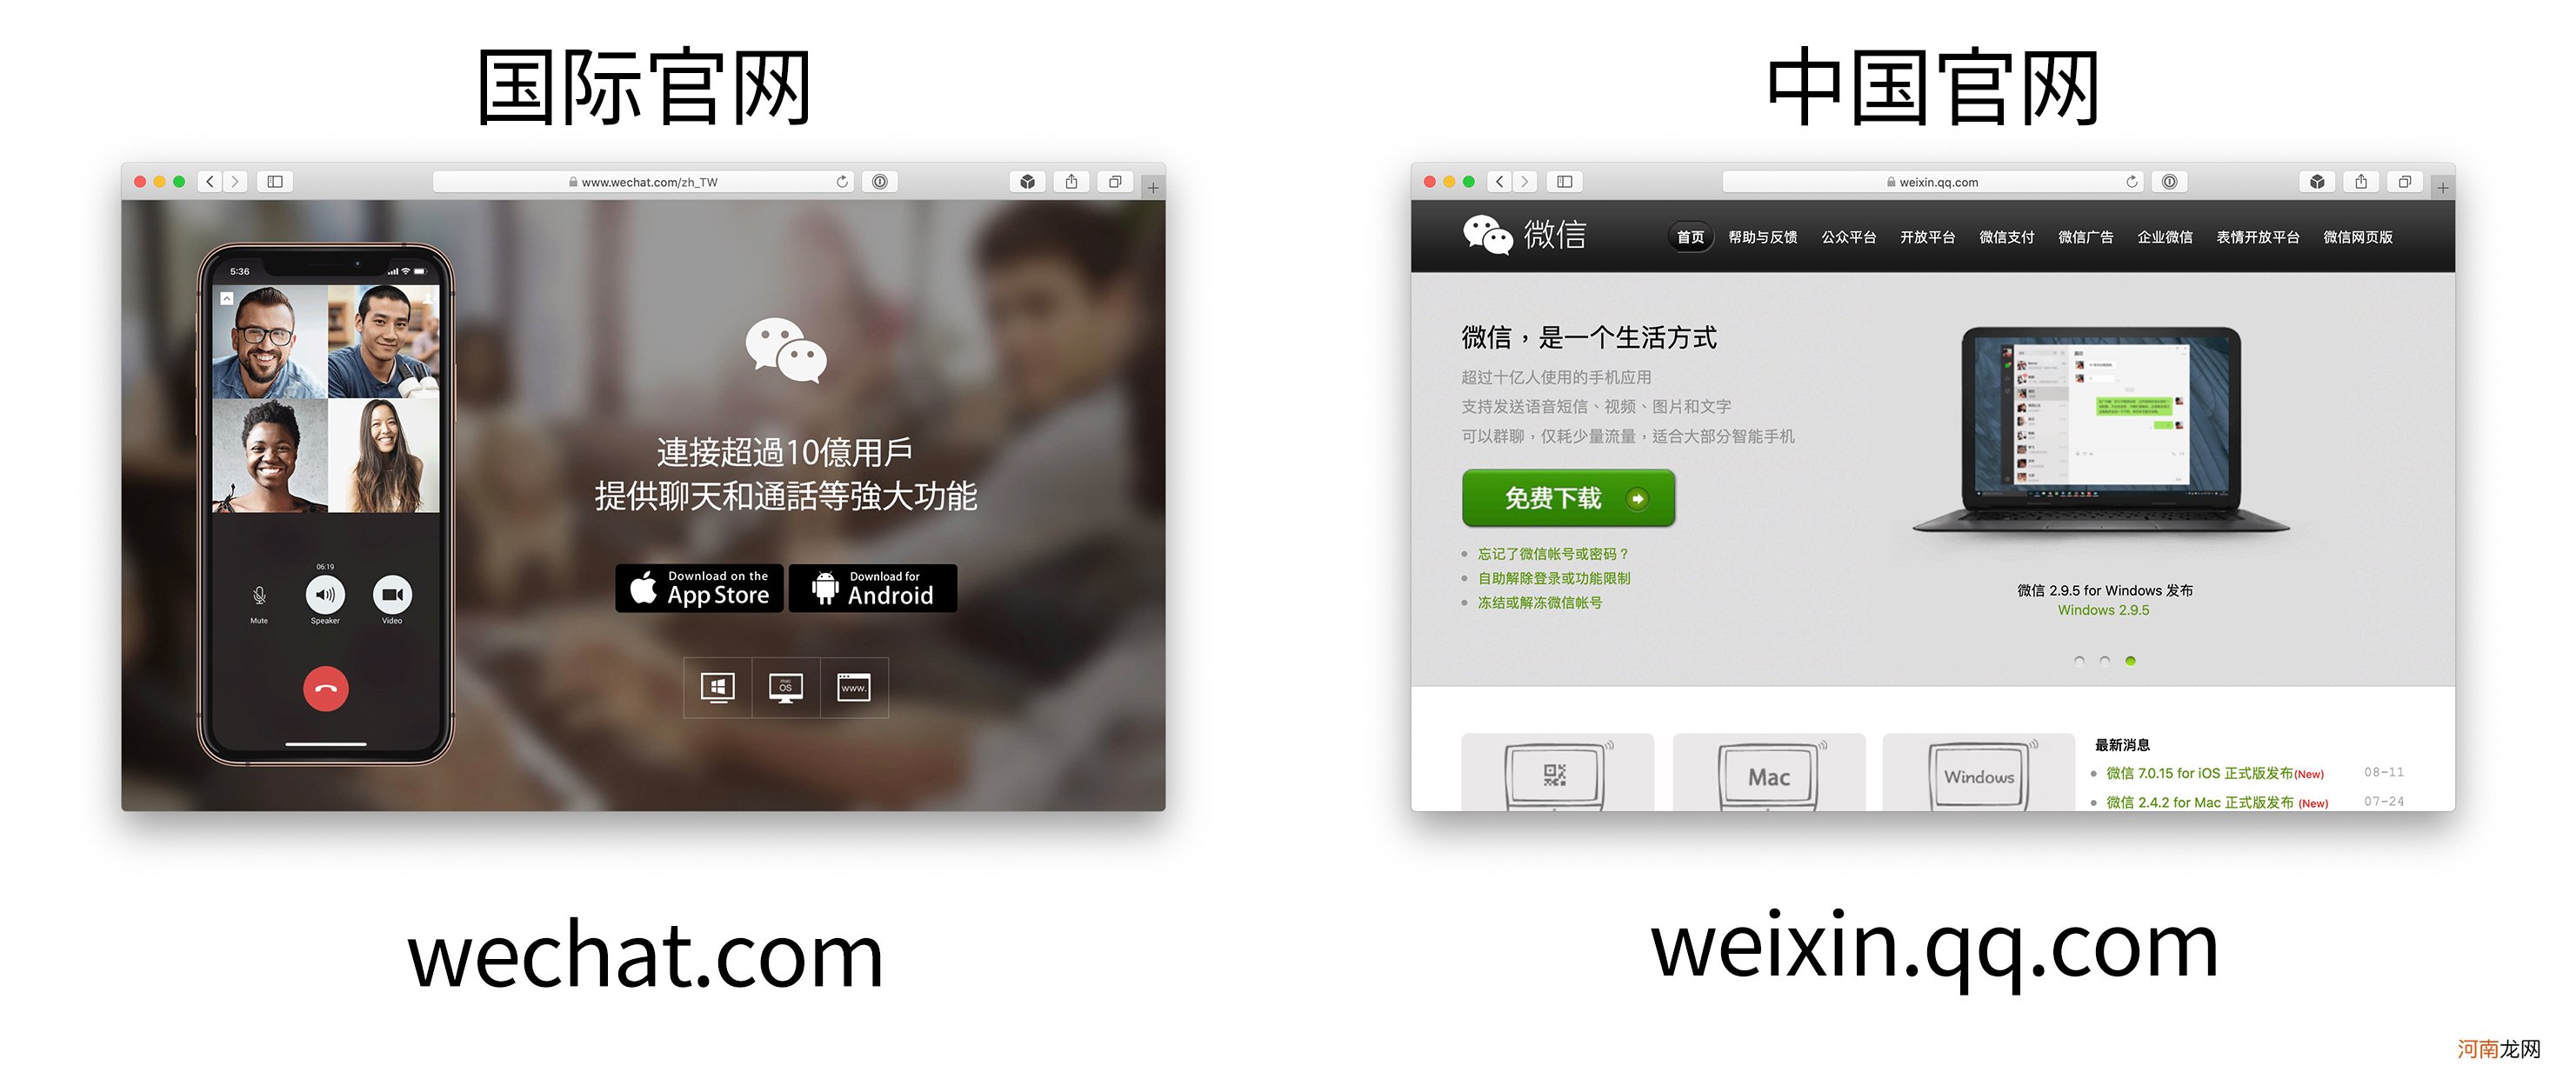 WeChat与微信的区别有哪些 wechat是什么软件